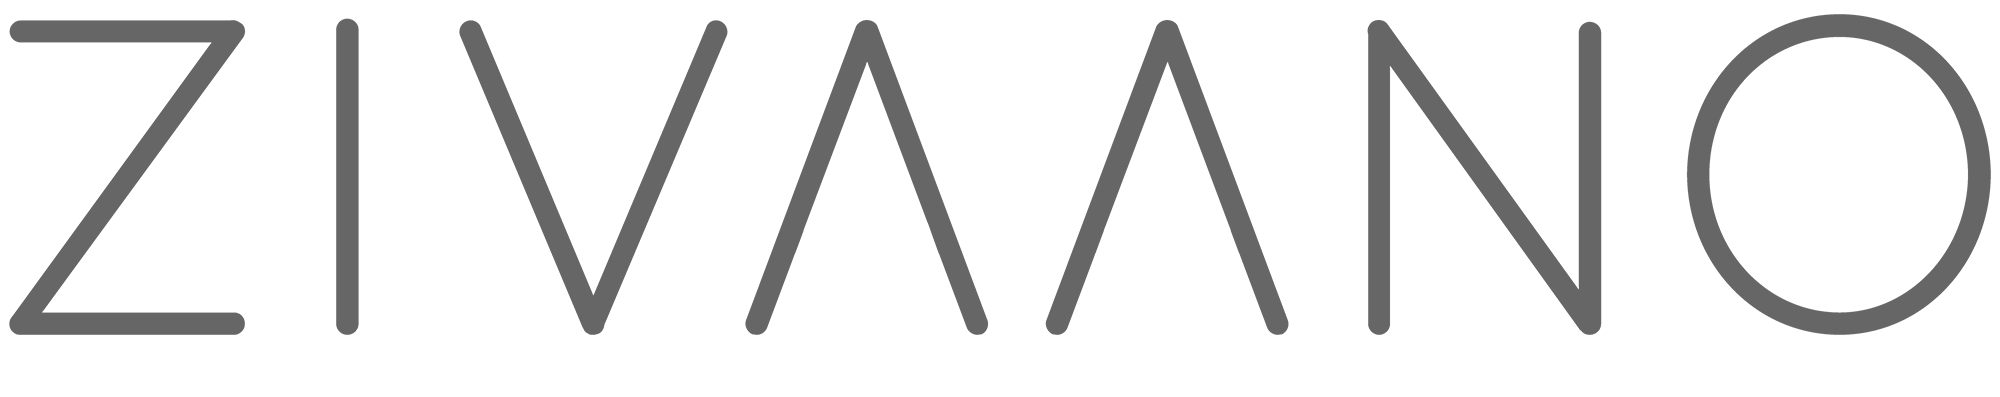 ZIVAANO logo